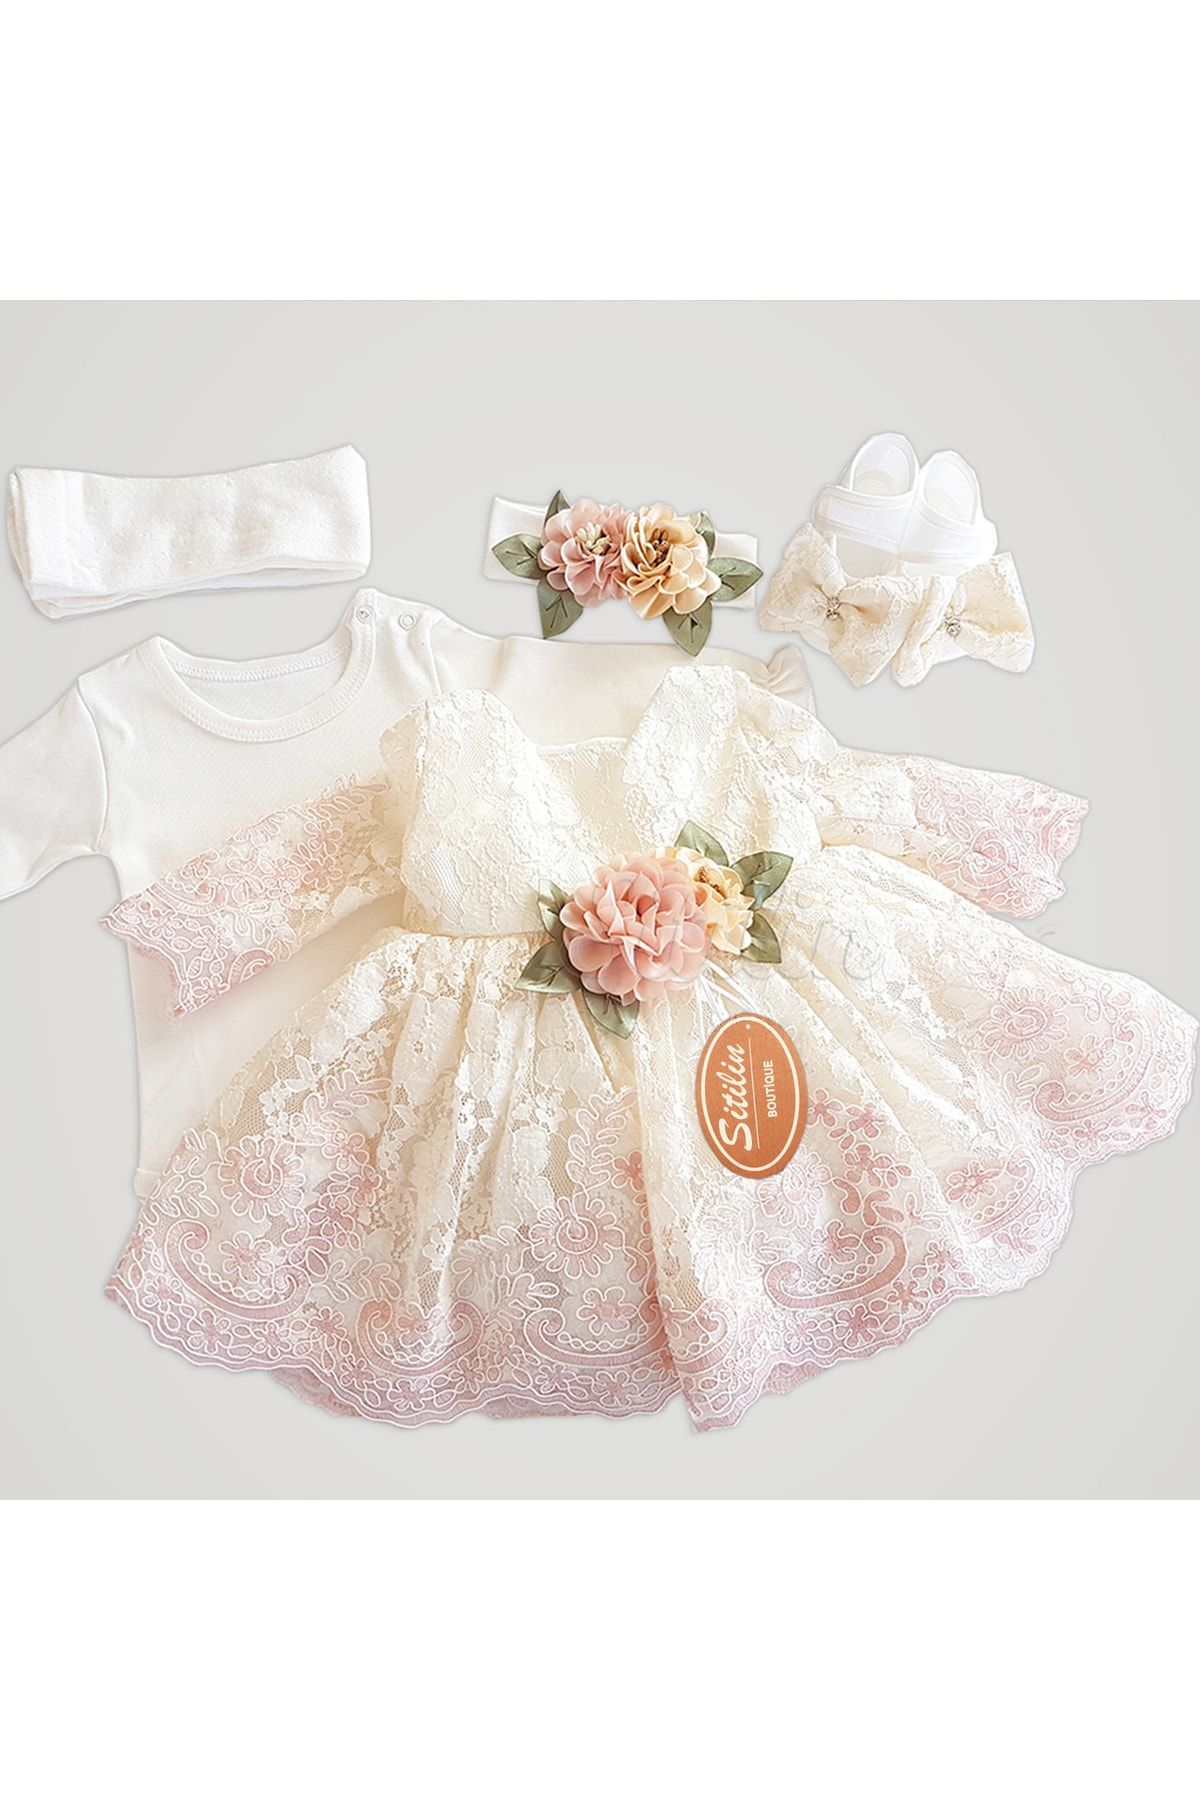 Sitilin Kız Bebek Mevlüt Elbisesi Gelinlik Fransız Dantelli Takımı